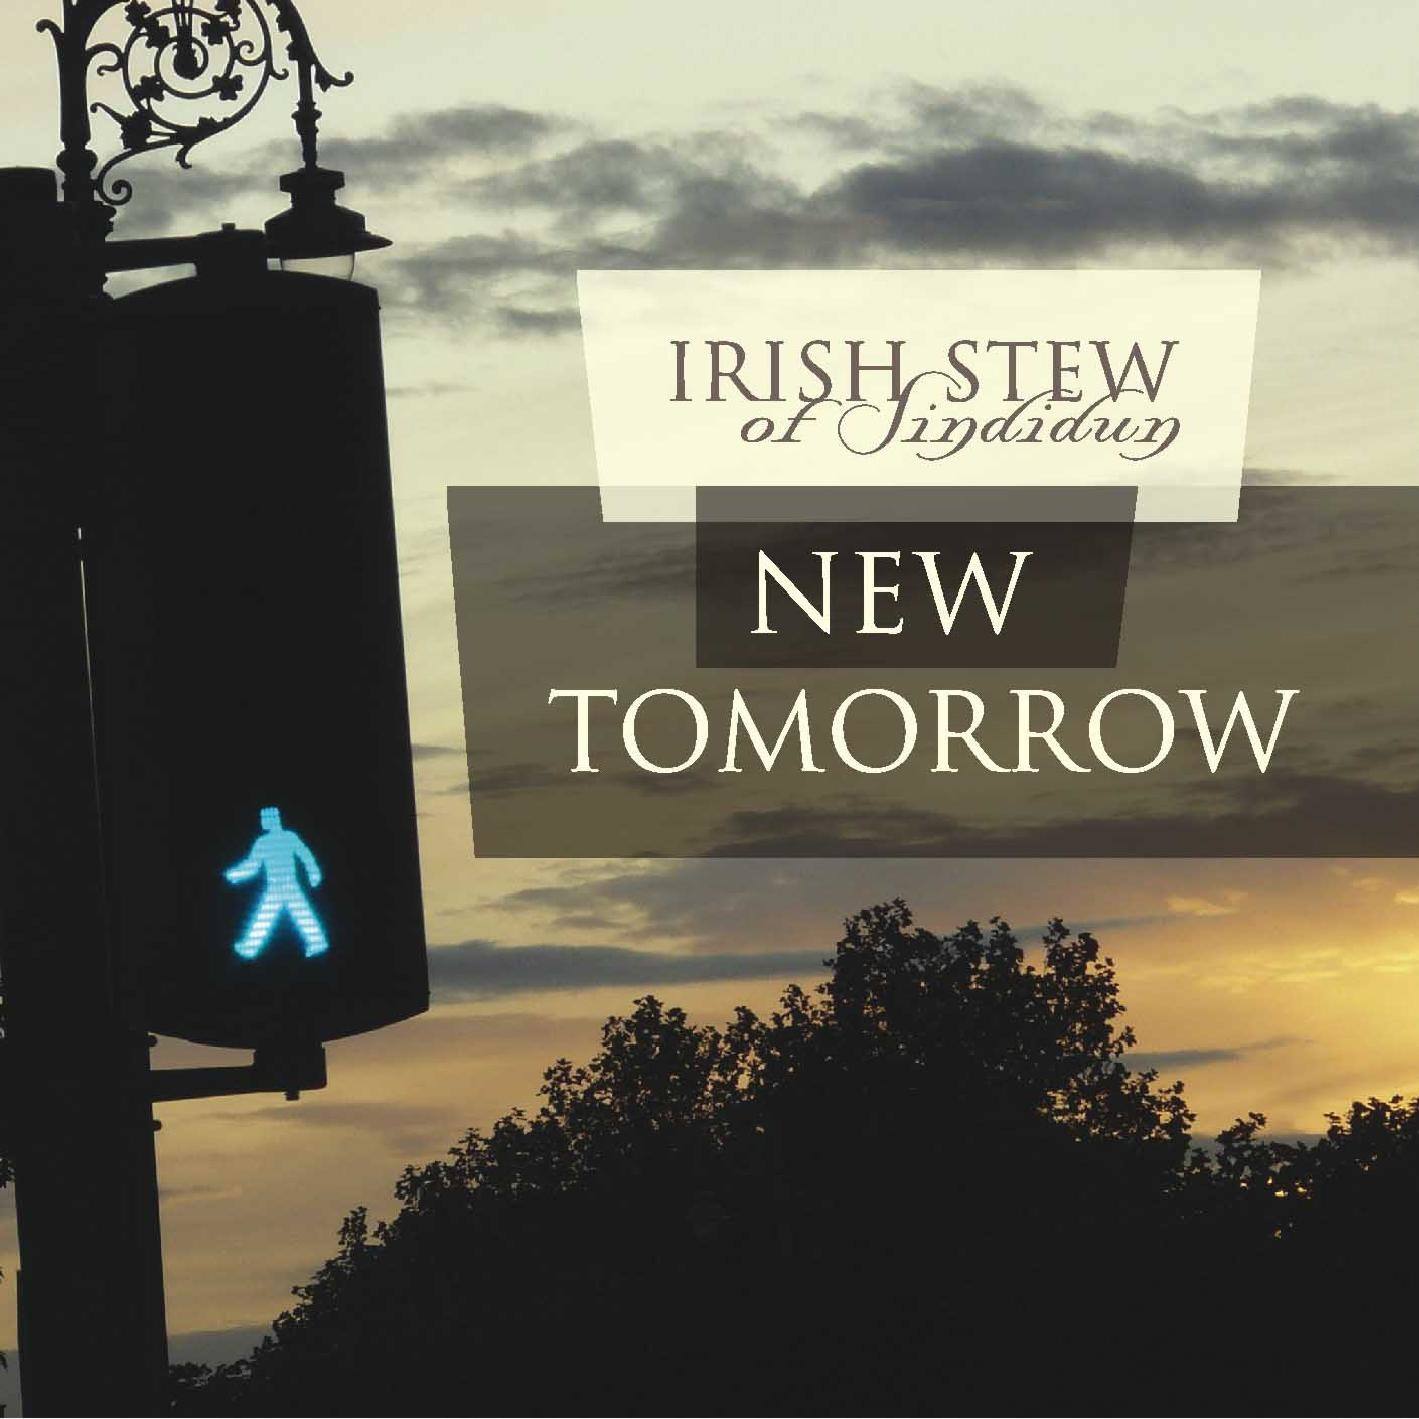 New Tomorrow - Irish Stew of Sindidun